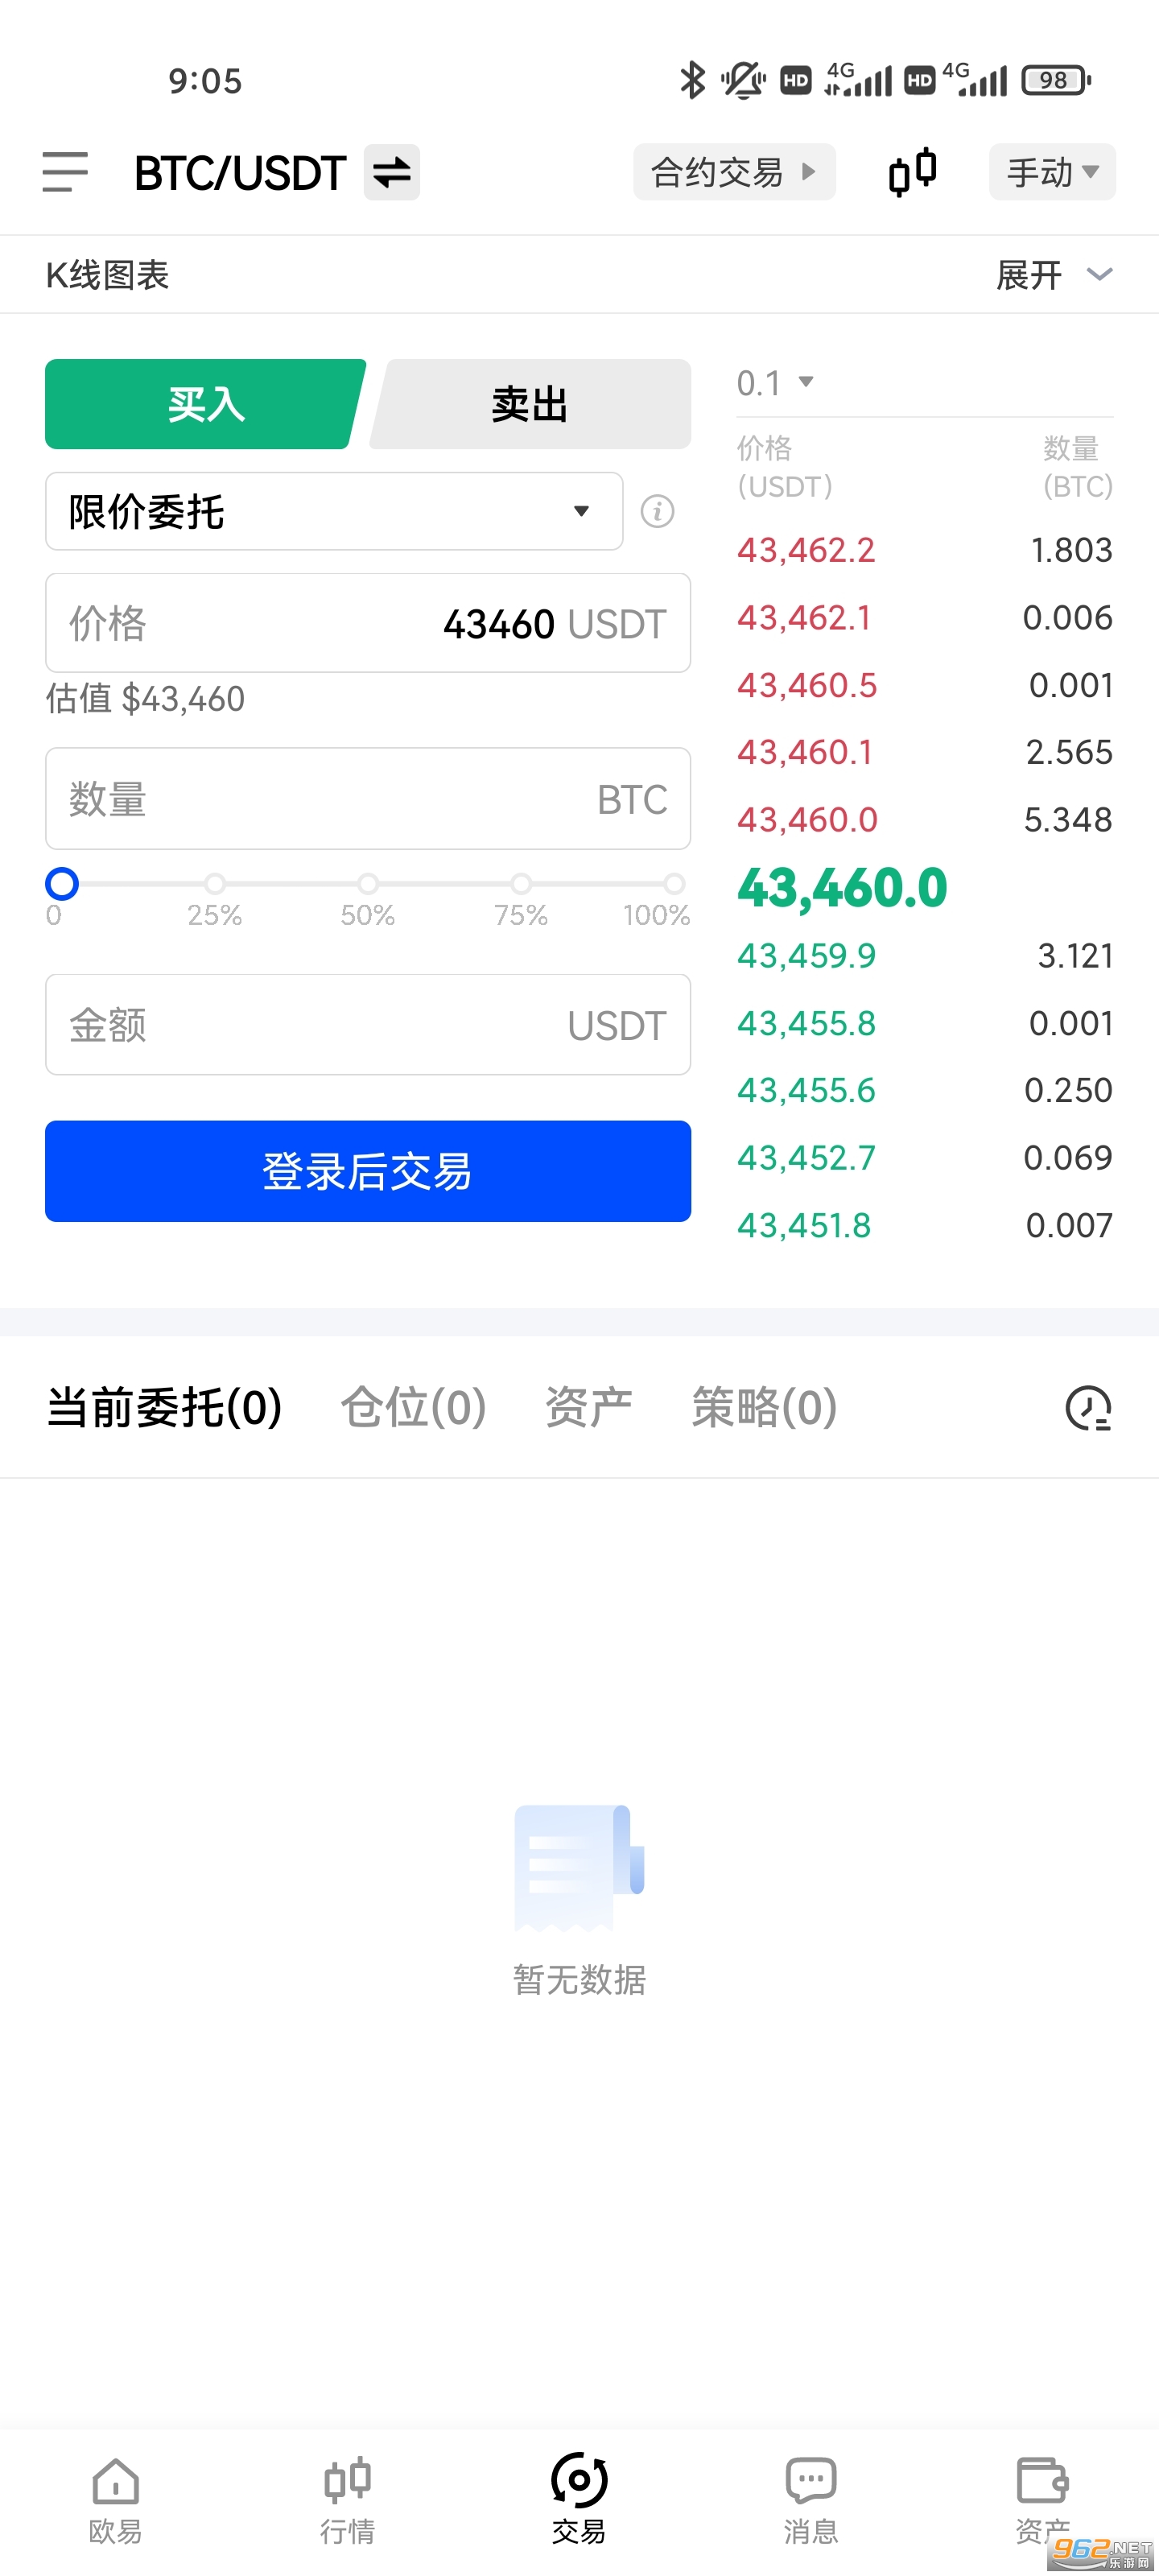 okex hong kong app v6.0.22